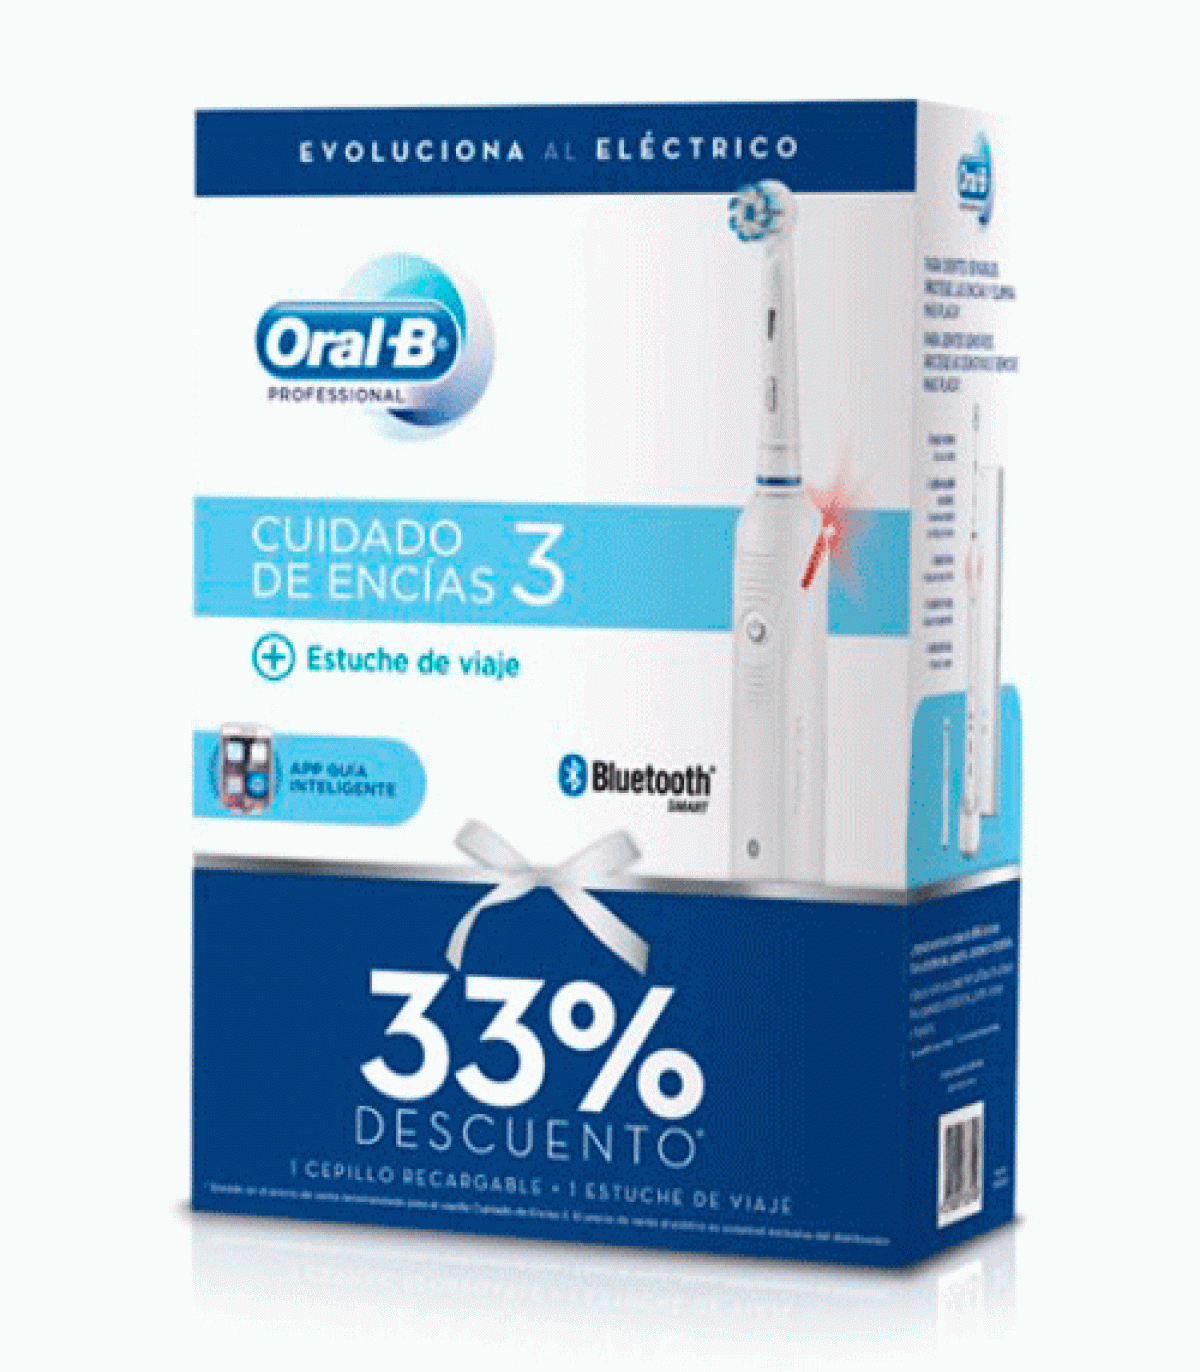 Cepillo Eléctrico Oral-B Pro 3 - Outlet Exclusivo